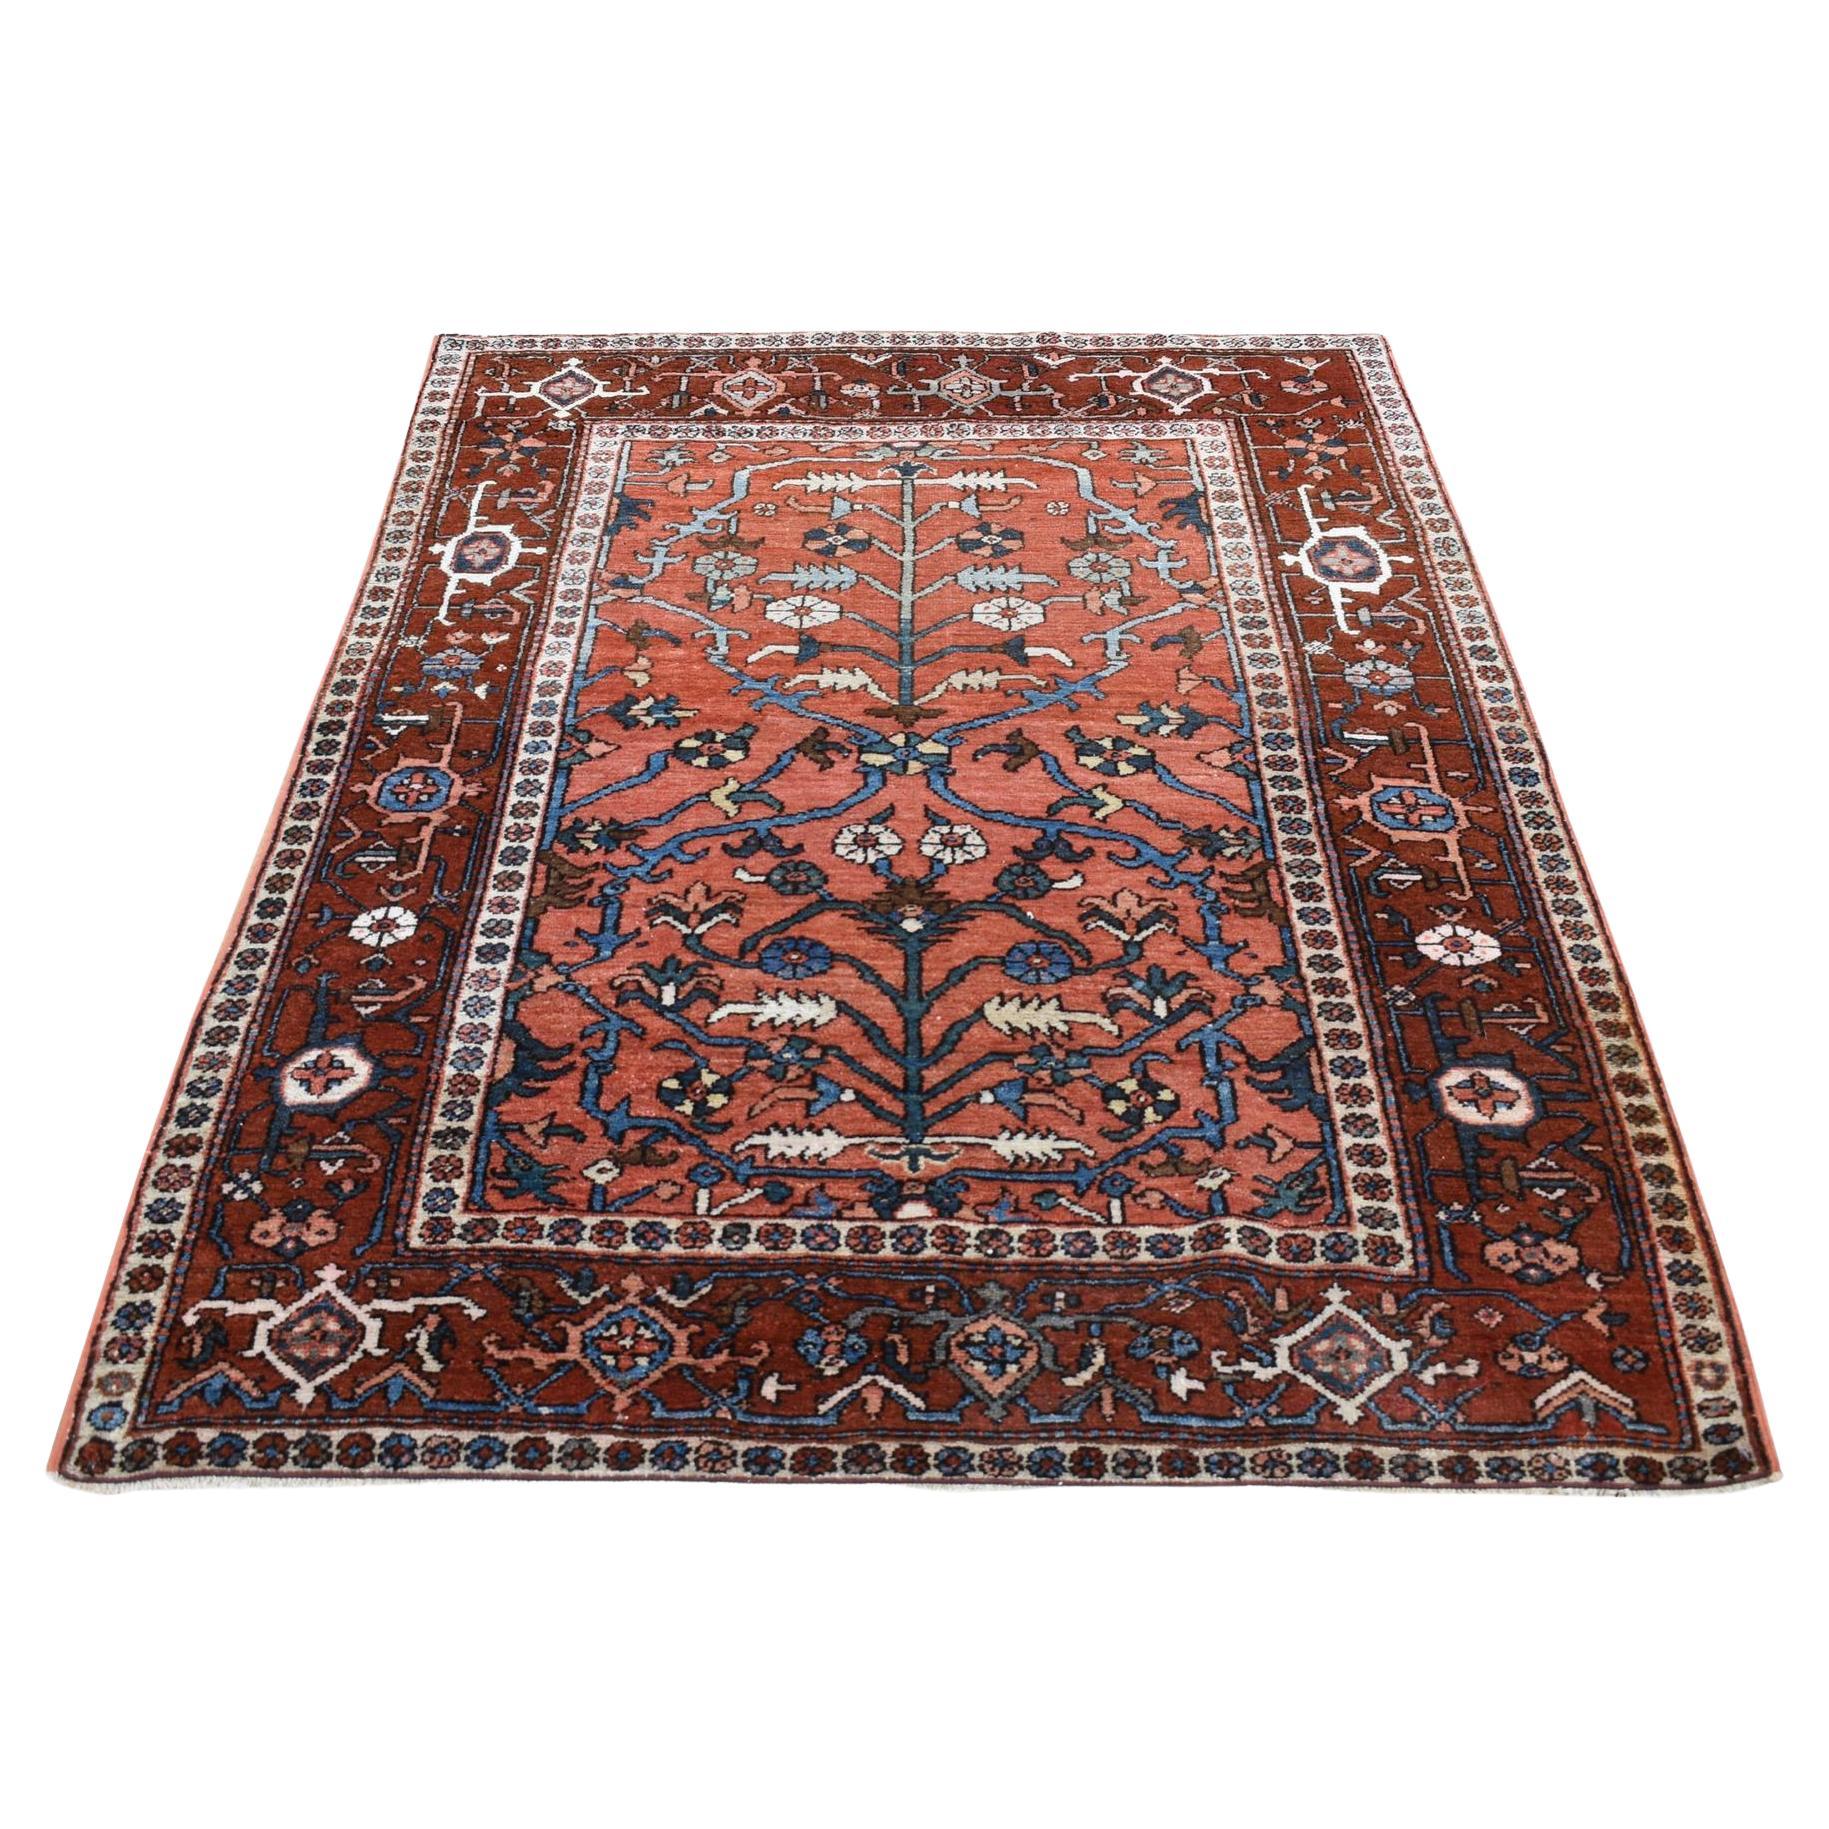 Roter antiker persischer Heriz-Teppich aus reiner Wolle, handgeknüpft, hervorragender Zustand